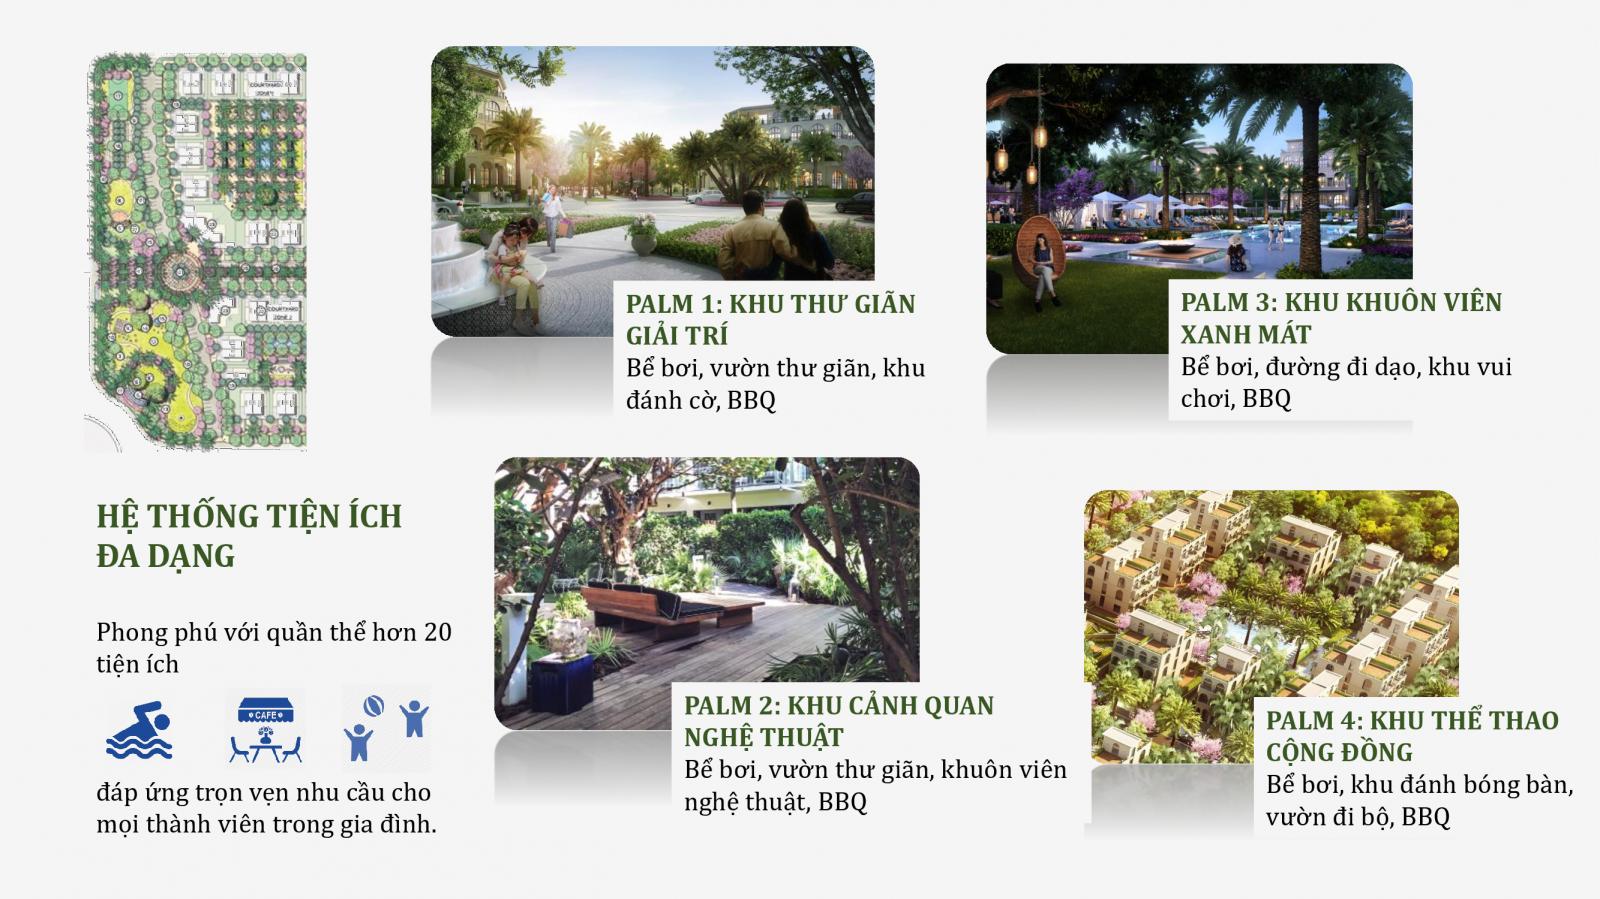 Hình ảnh về Palm Garden Shop Villas Phú Quốc